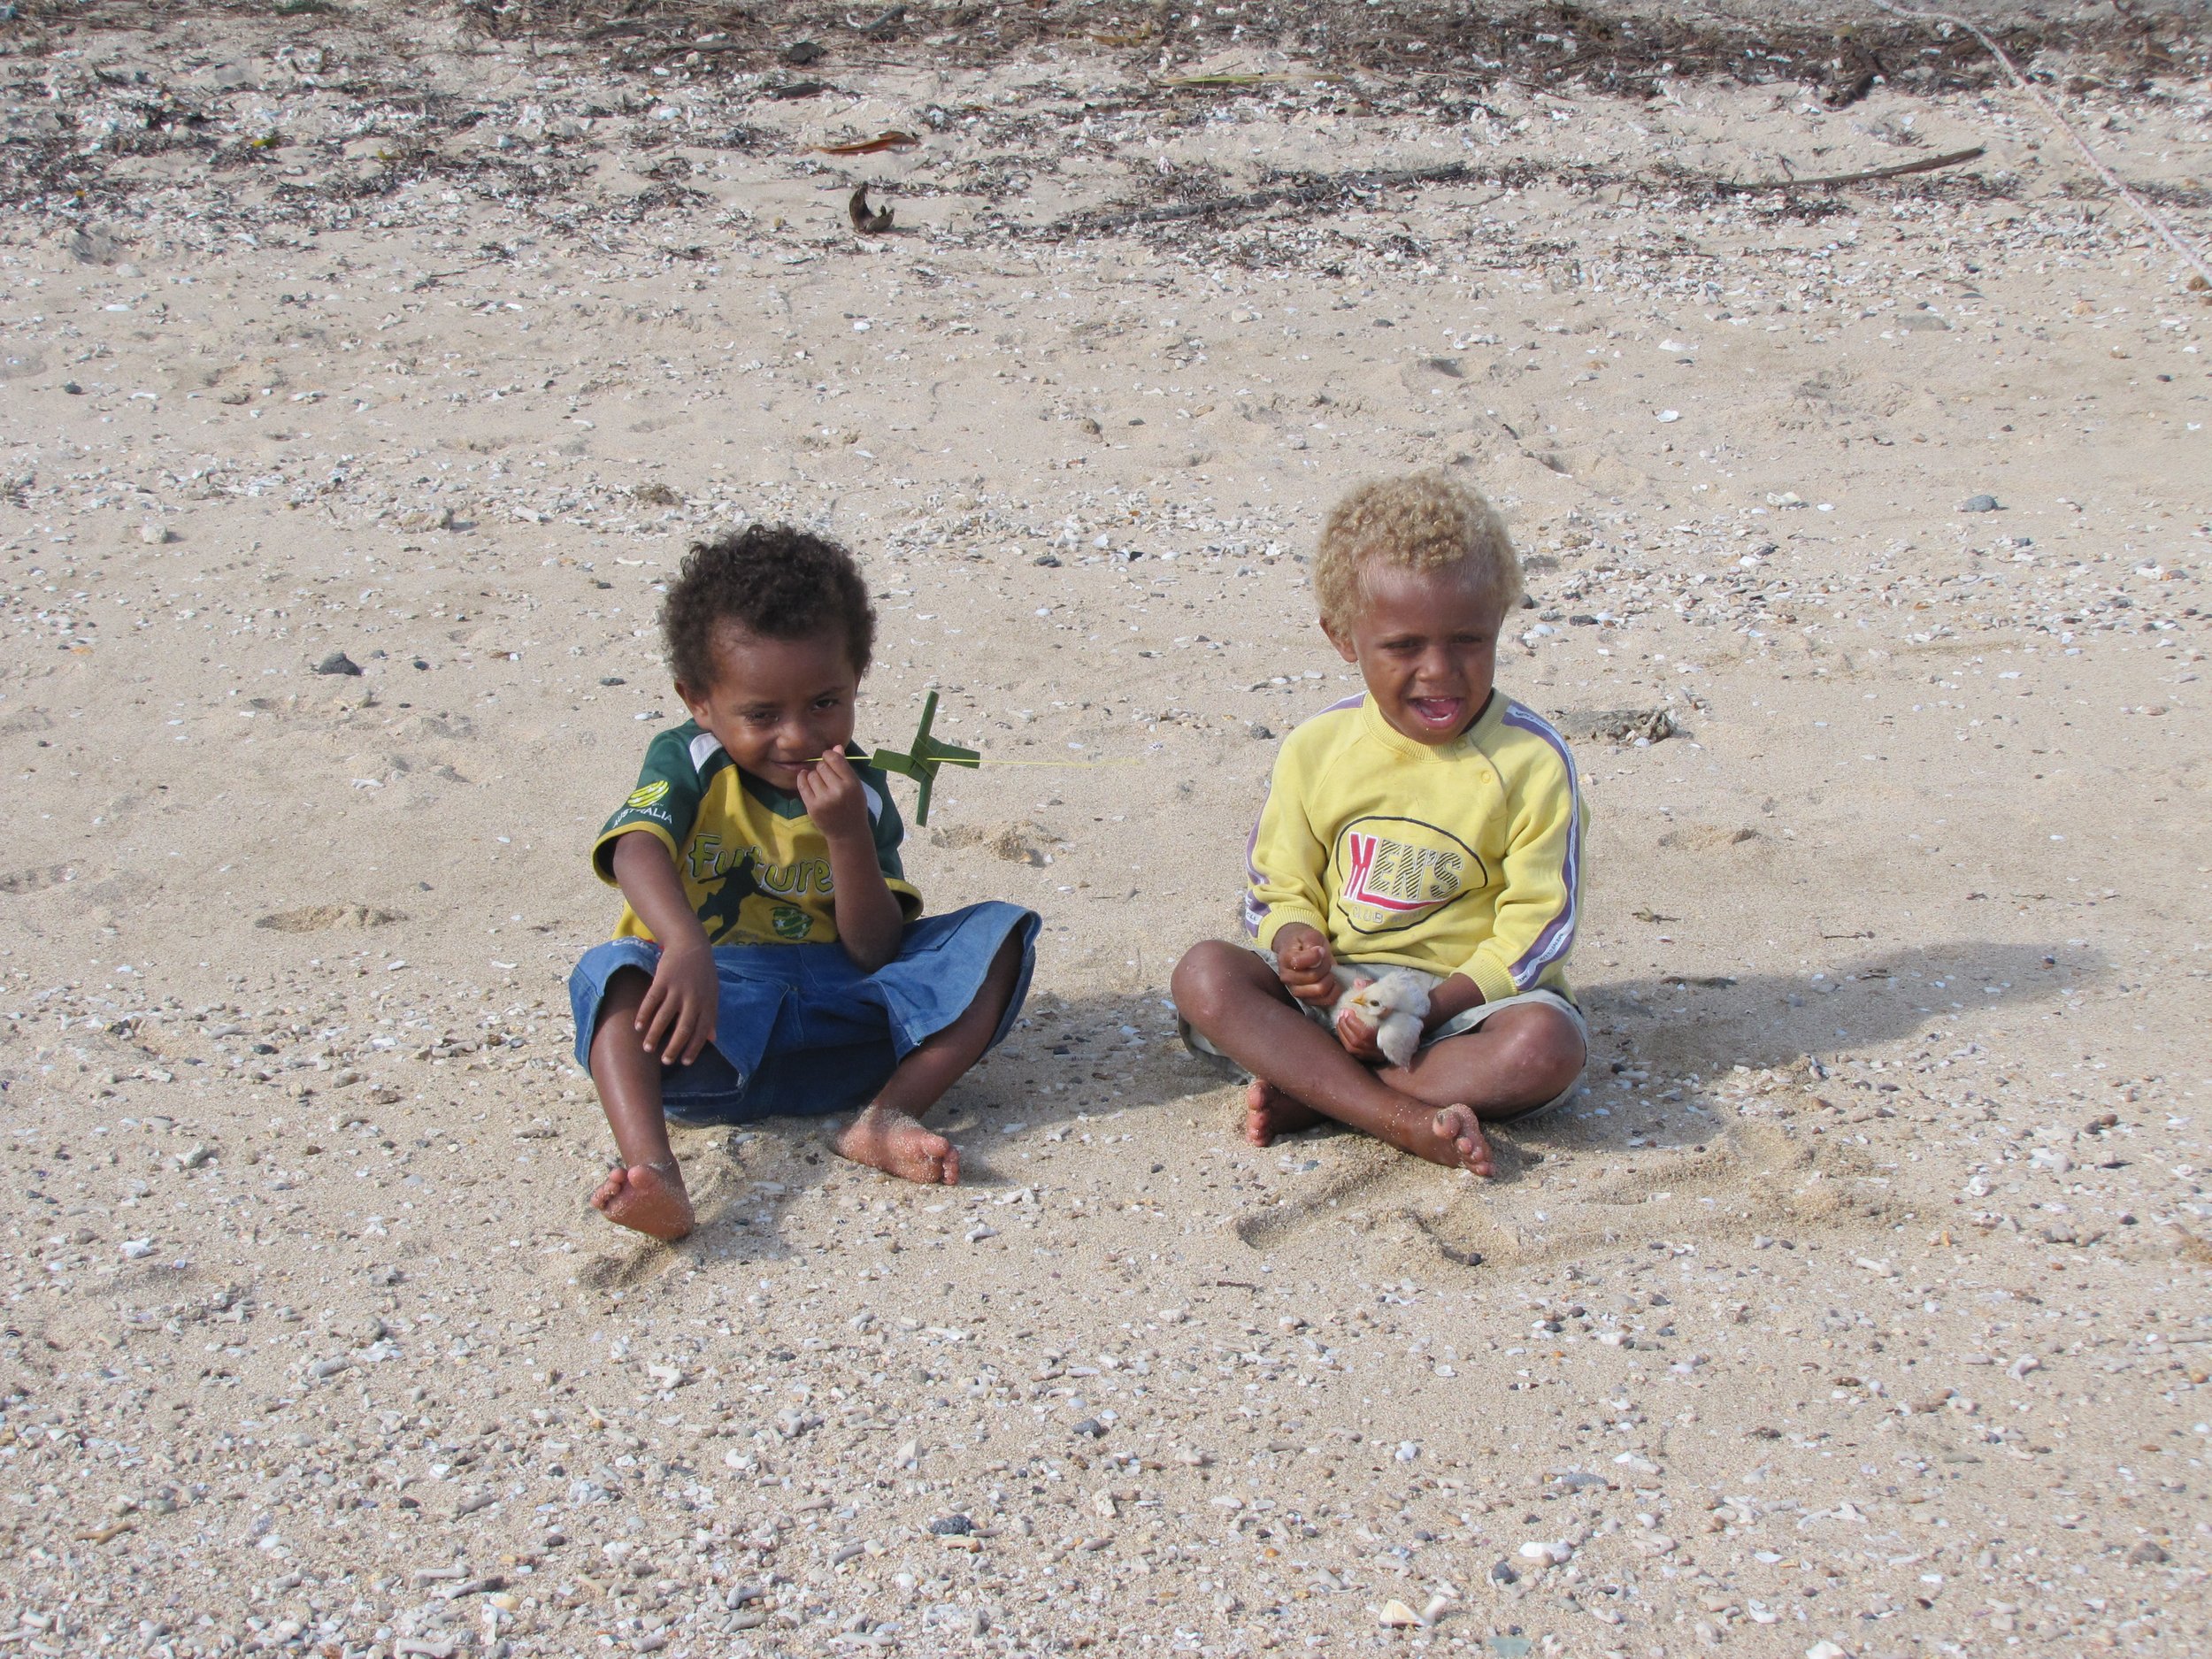 Children on the beach.